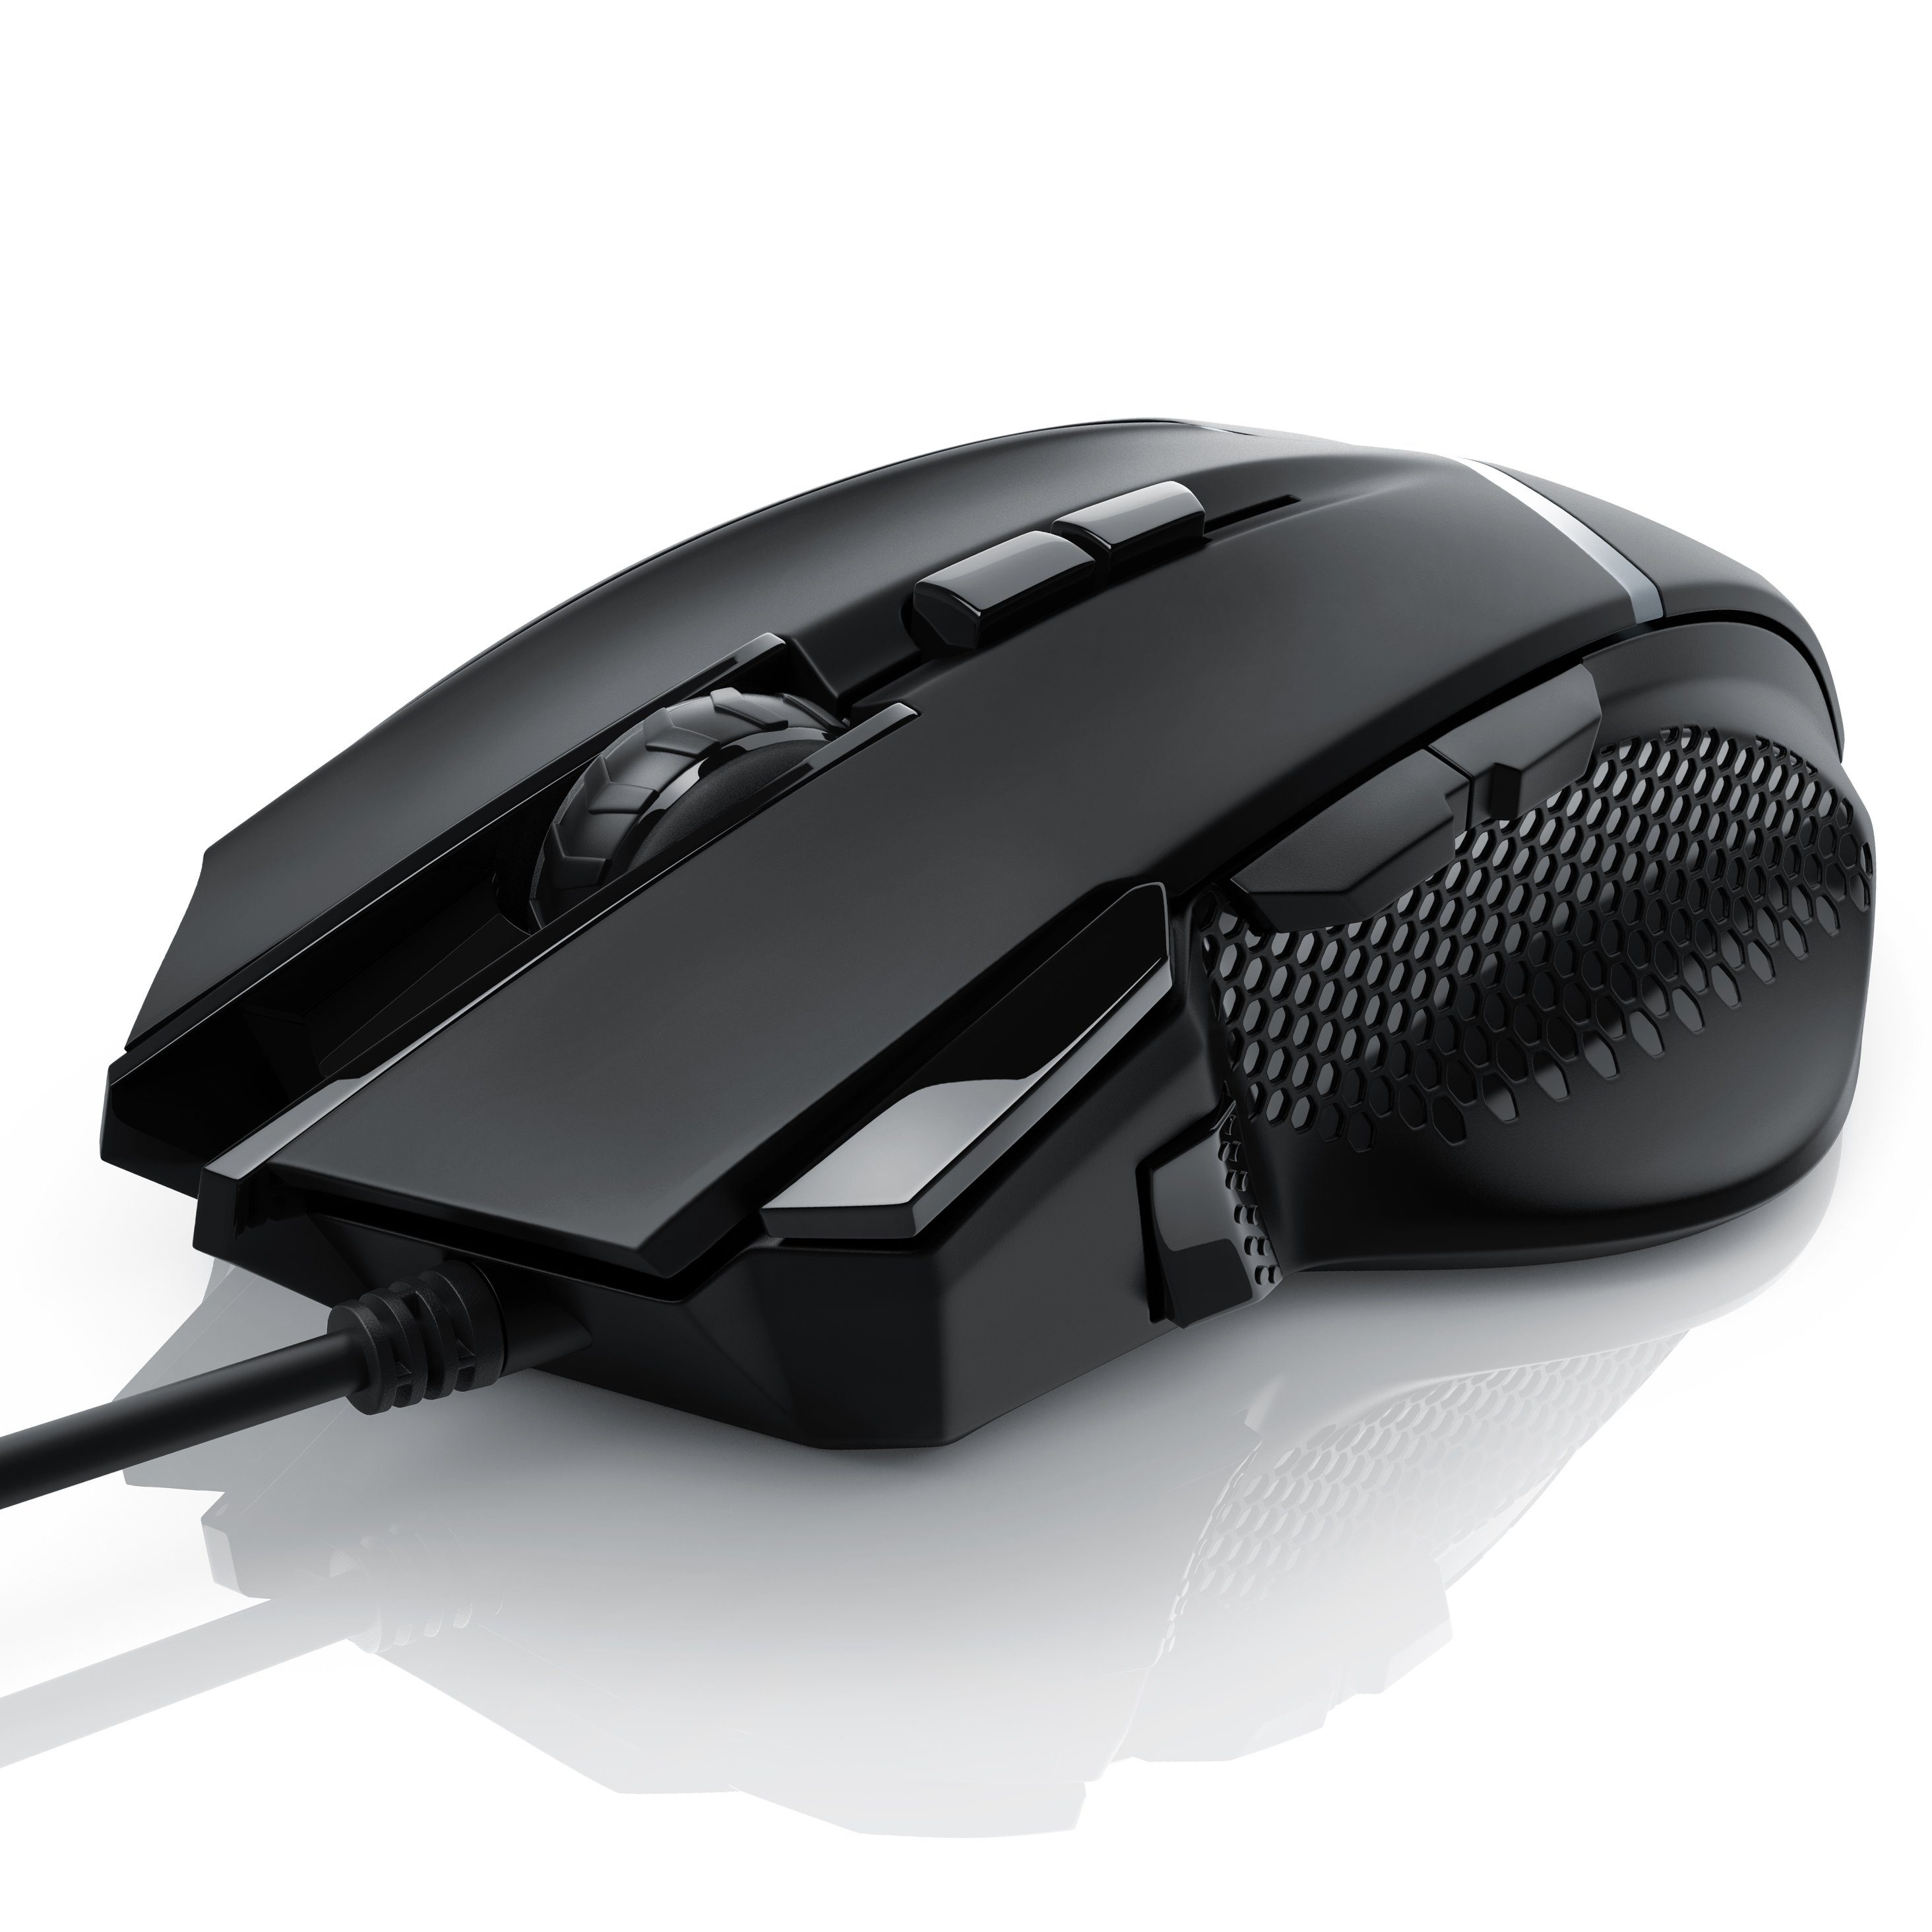 OMEN 400 Gaming Maus schwarz kabelgebunden, bis 5.000 dpi, LED-Beleuchtung, 6 programmierbare Tasten 